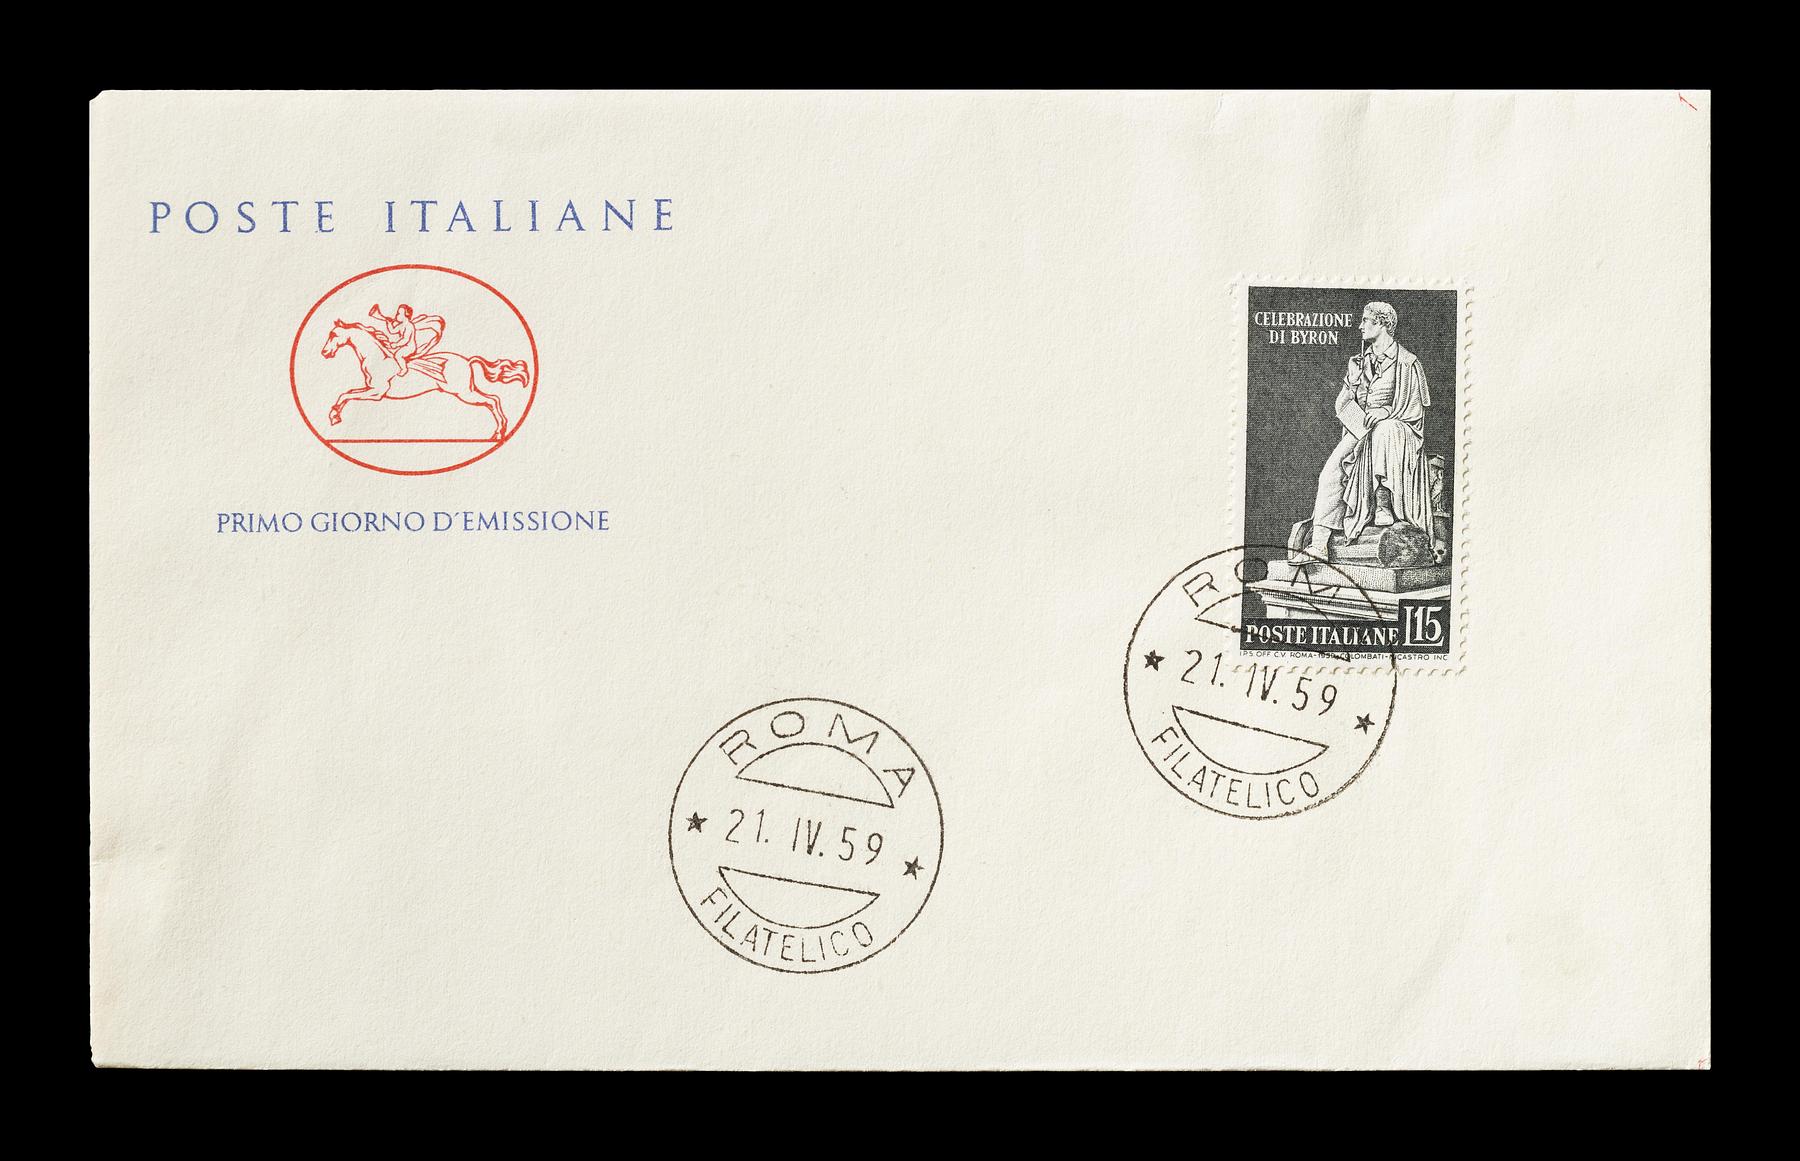 Førstedagskuvert med italiensk frimærke med Thorvaldsens statue af George Gordon Byron, E2363